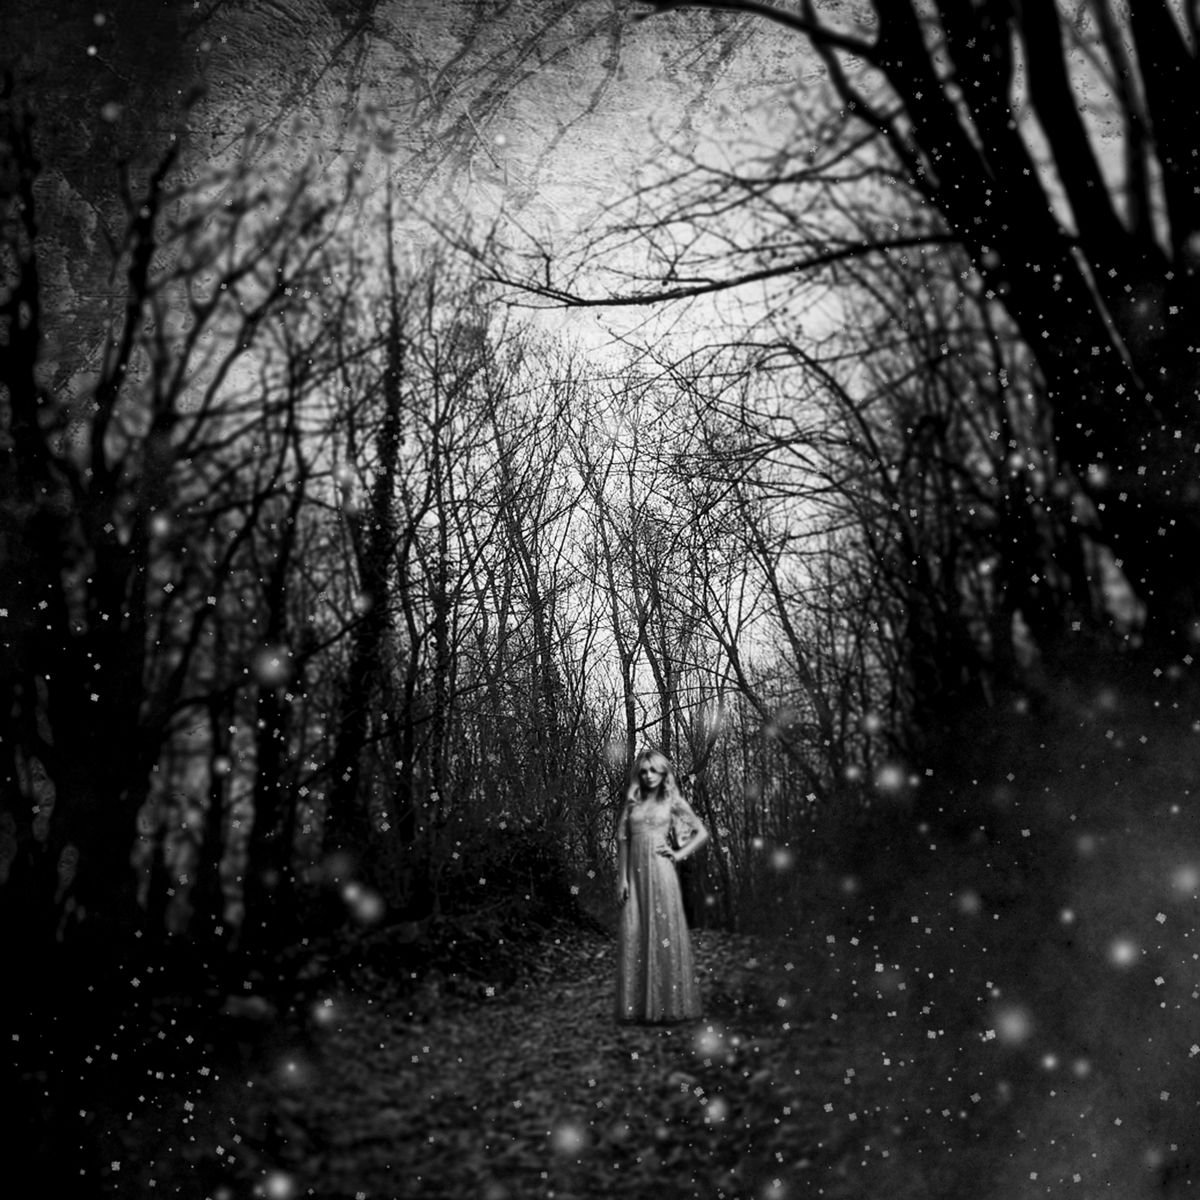 Winter Fairytale by Carmelita Iezzi